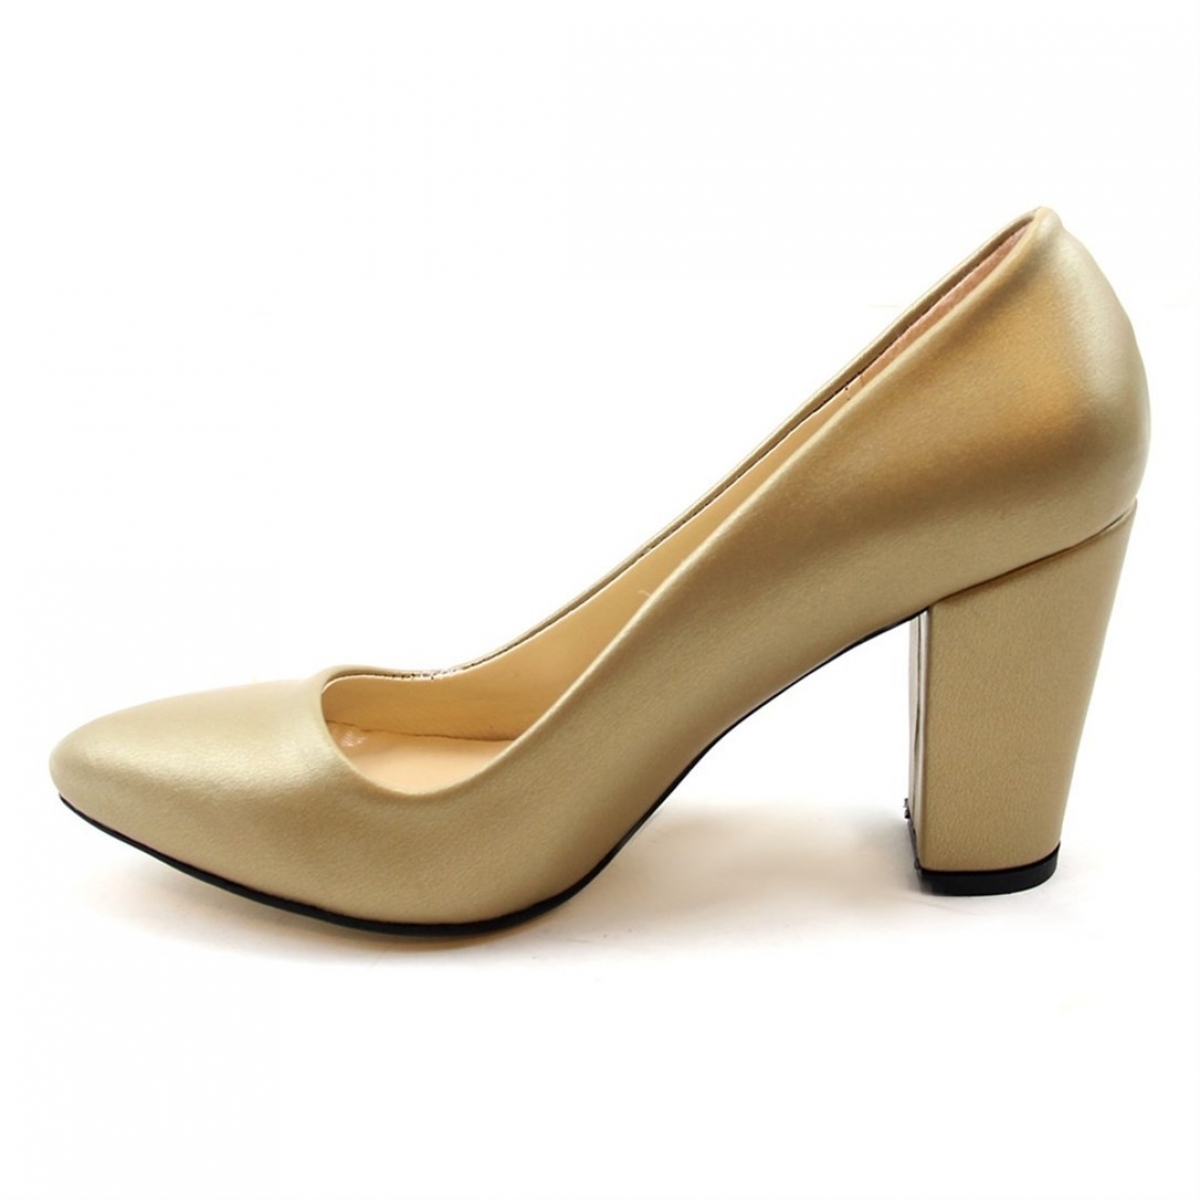 Flo Günlük Topuklu Altın Kadın Ayakkabı N-2600. 3